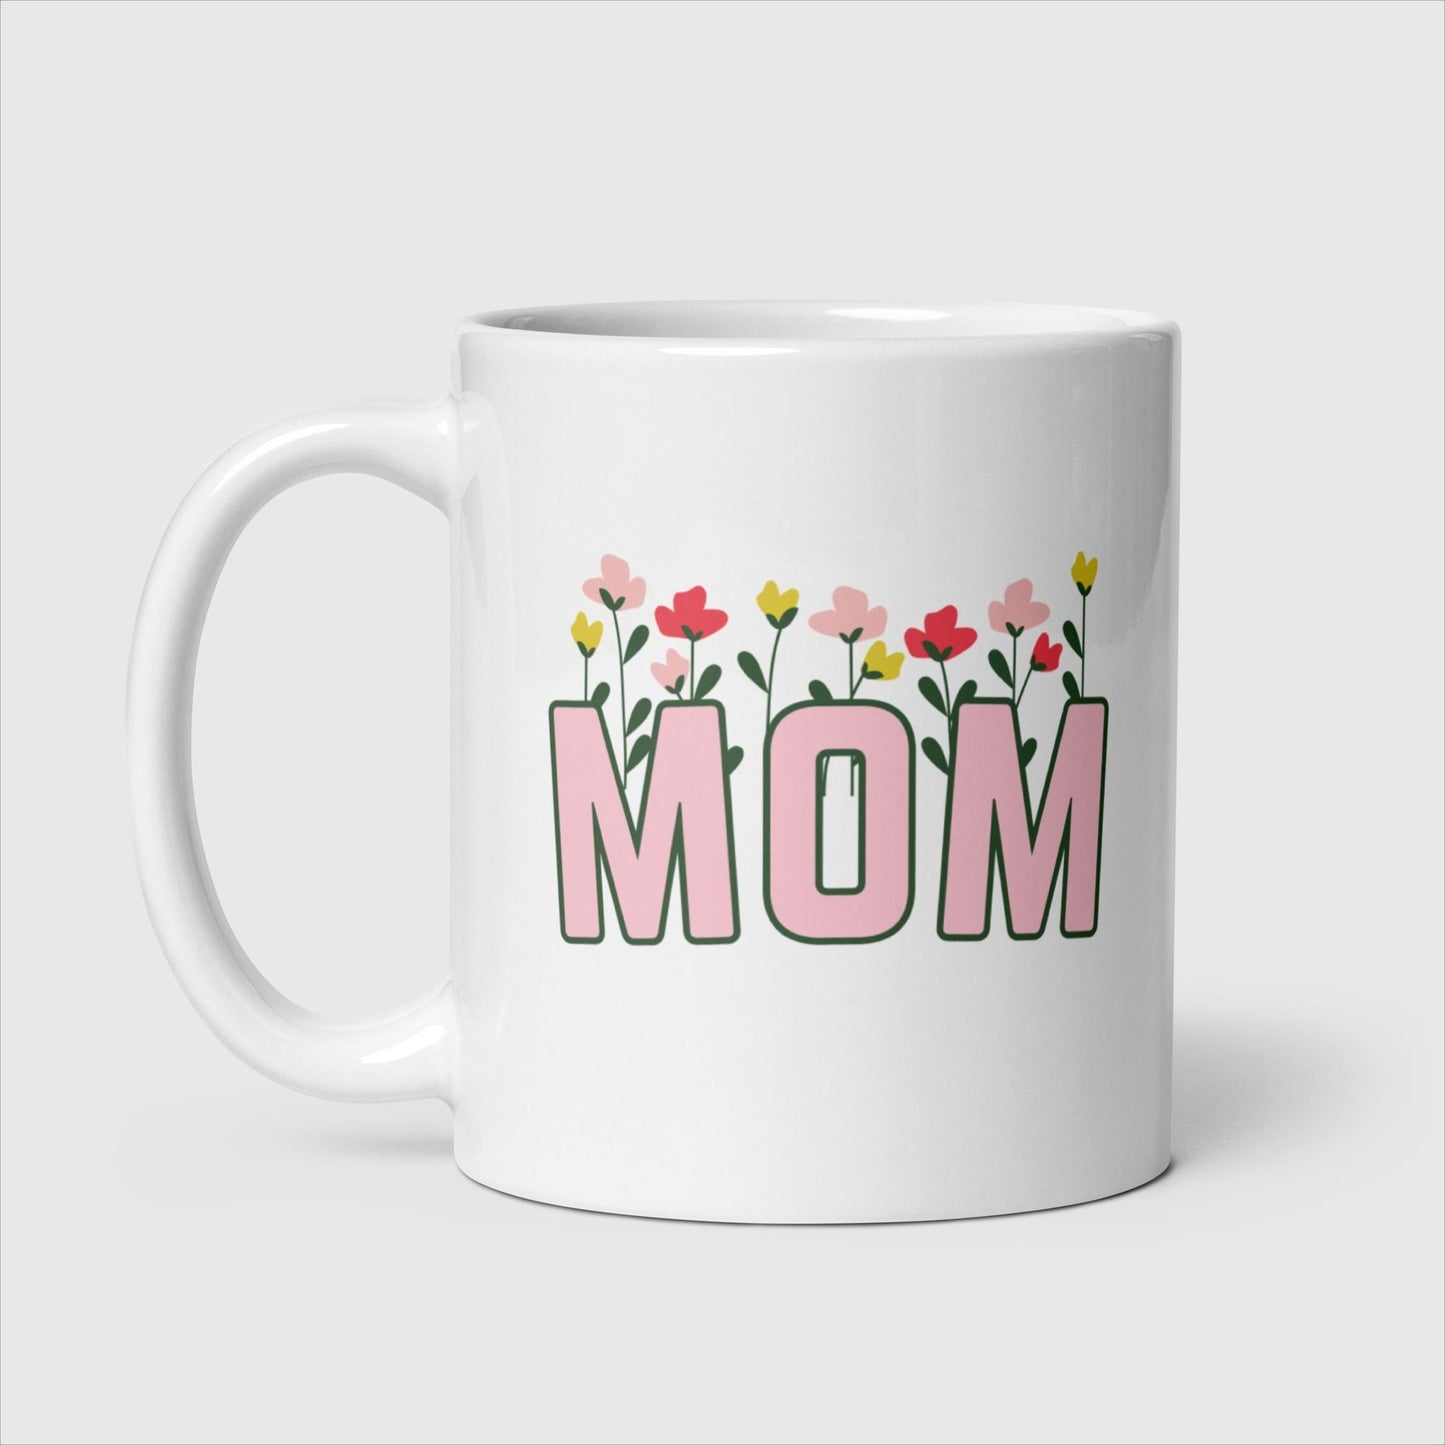 Mocha Pun Mother's Day Mug